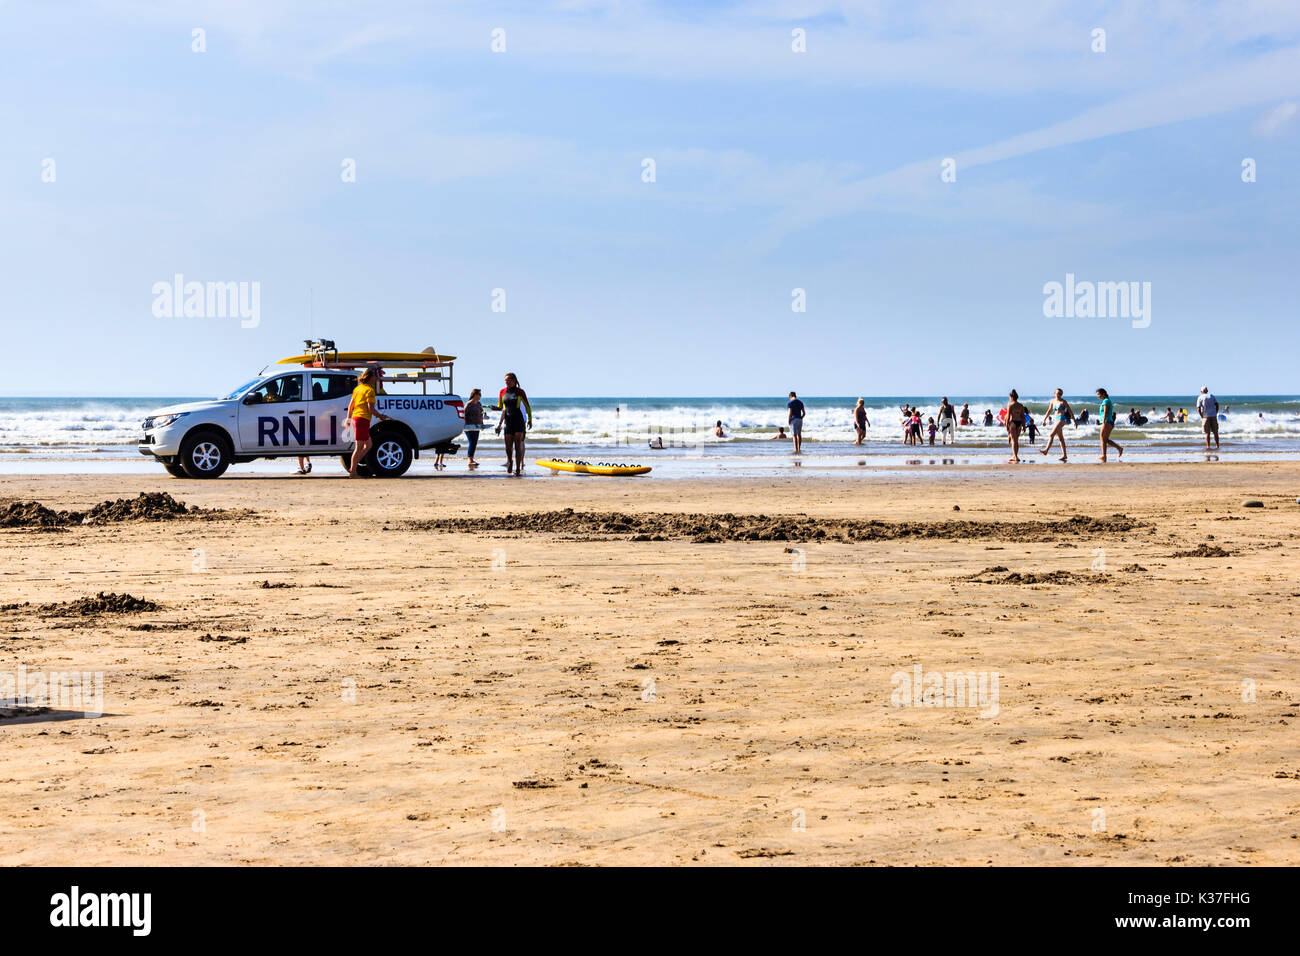 Ein rnli Rettungsschwimmer Fahrzeug und Urlauber auf dem sandigen Strand bei Ebbe an einem sonnigen Tag an Westward Ho!, Devon, England, Großbritannien Stockfoto